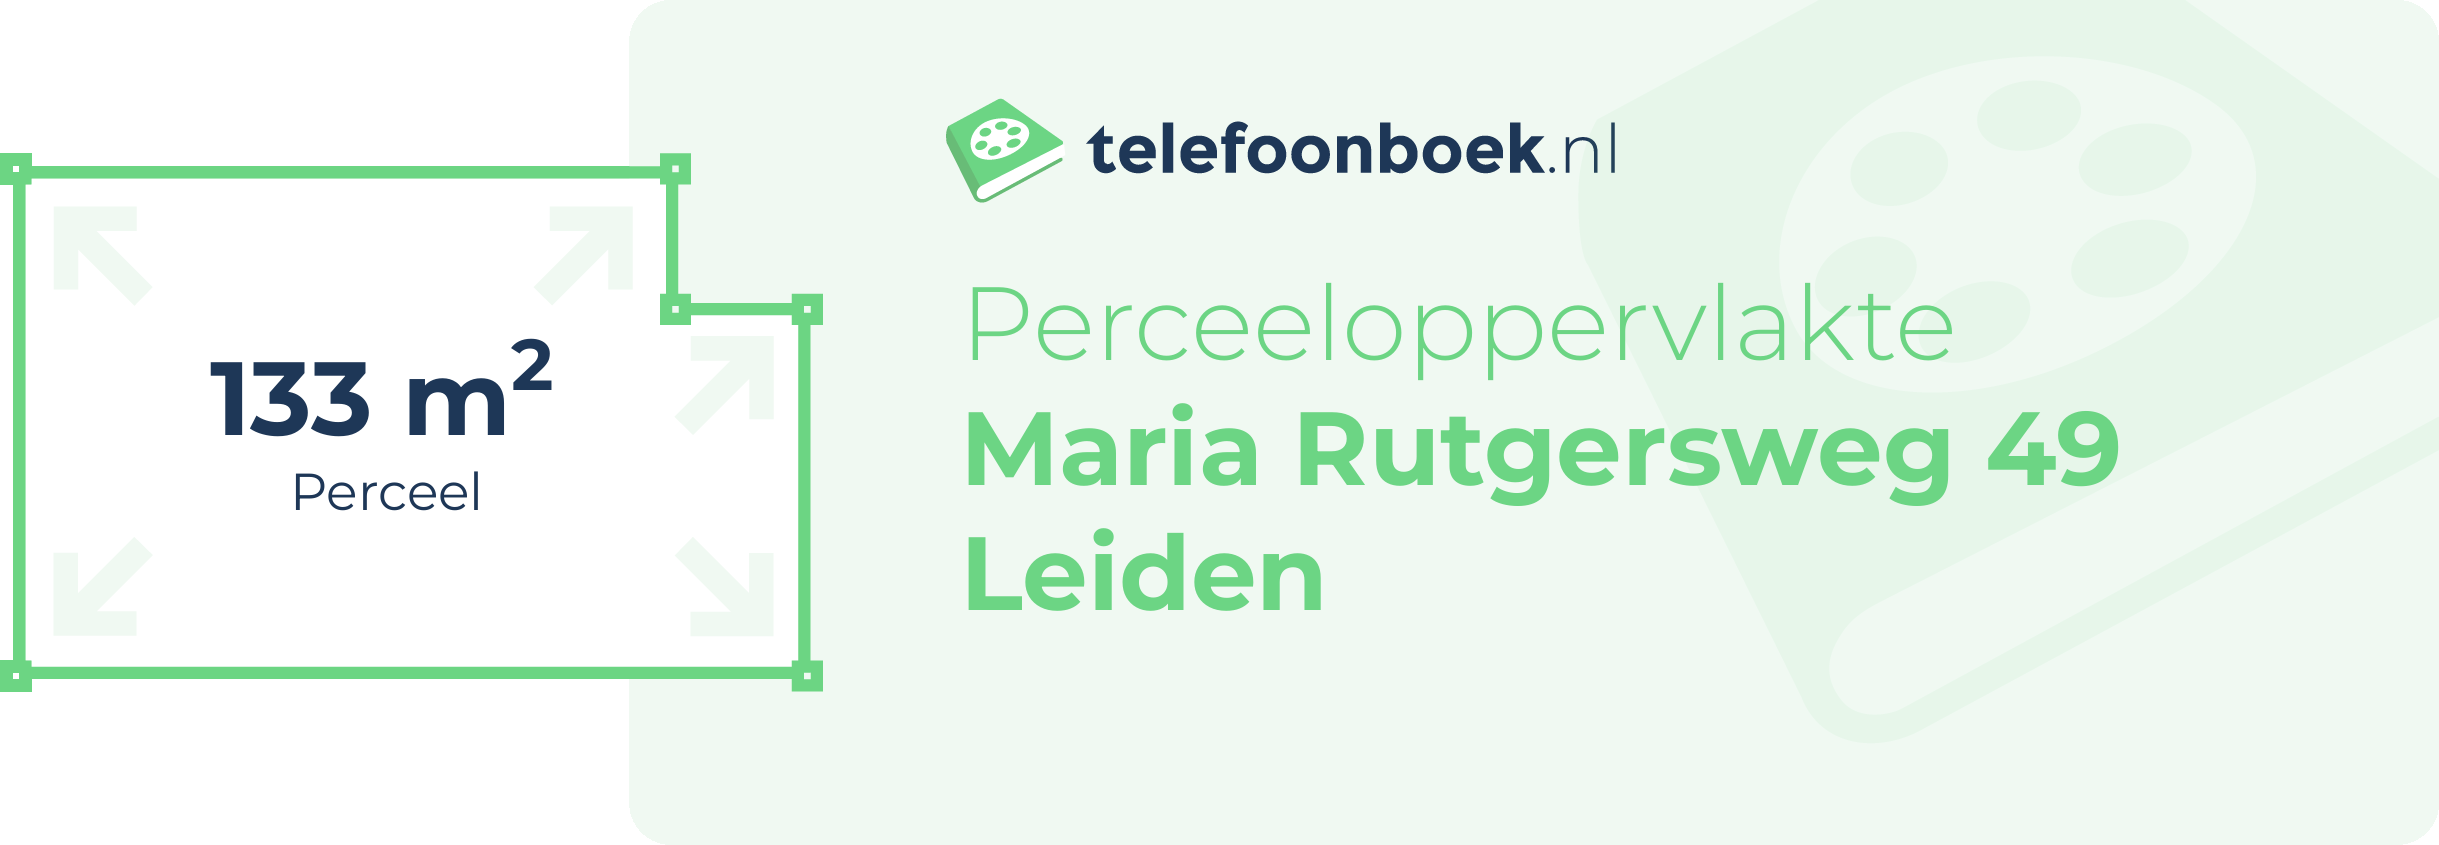 Perceeloppervlakte Maria Rutgersweg 49 Leiden